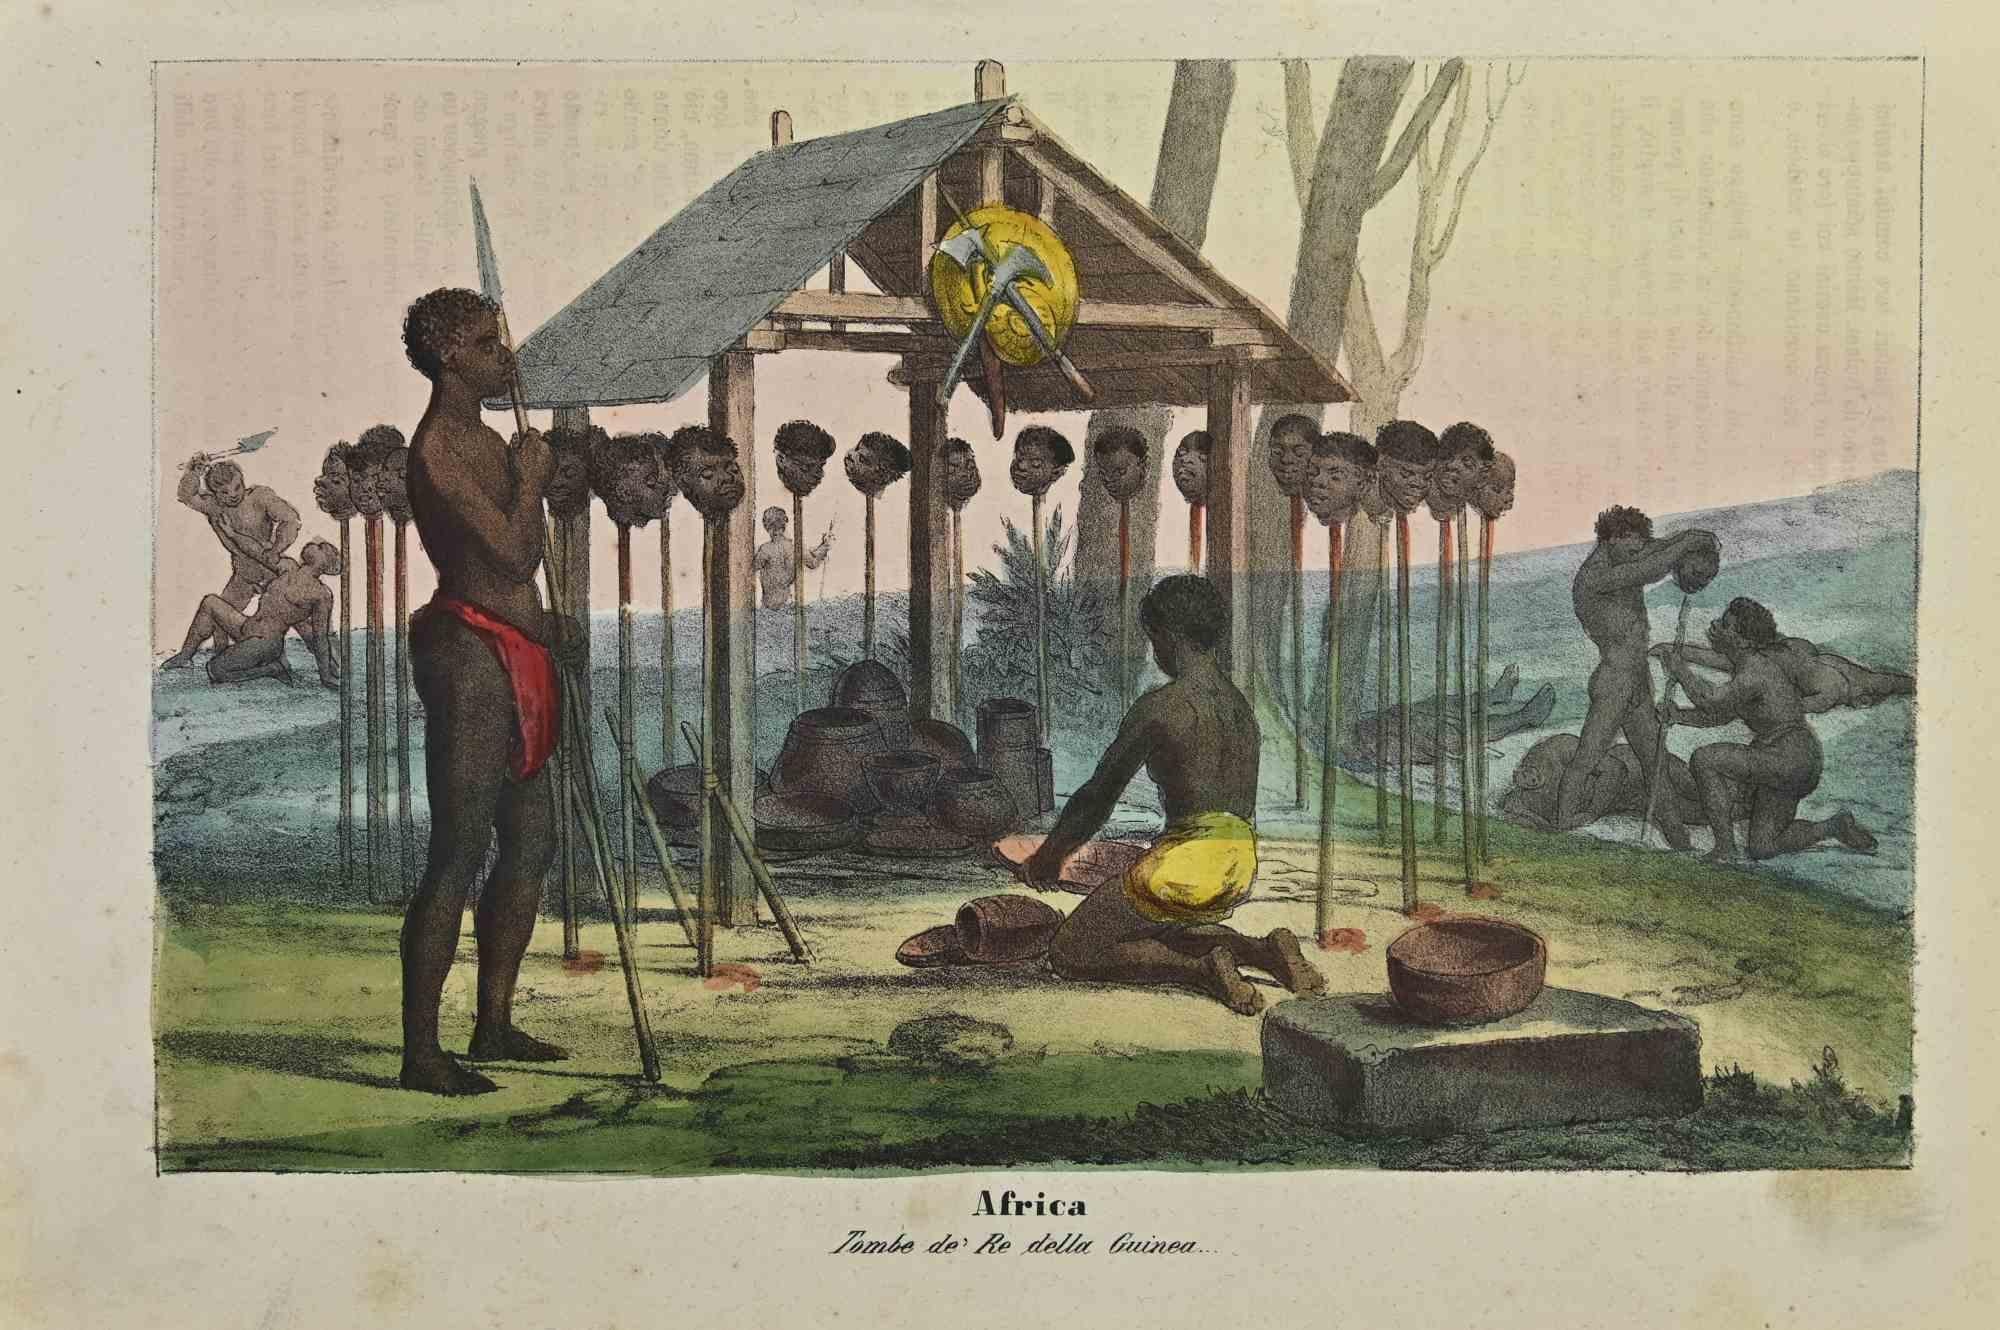 Ancient African Customs ist eine Lithographie von Auguste Wahlen aus dem Jahr 1844.

Handgefärbt.

Guter Zustand.

Im Zentrum des Kunstwerks steht der Originaltitel "Africa" und der Untertitel "Tombe de' Re della Guinea" (übersetzt: "Gräber des